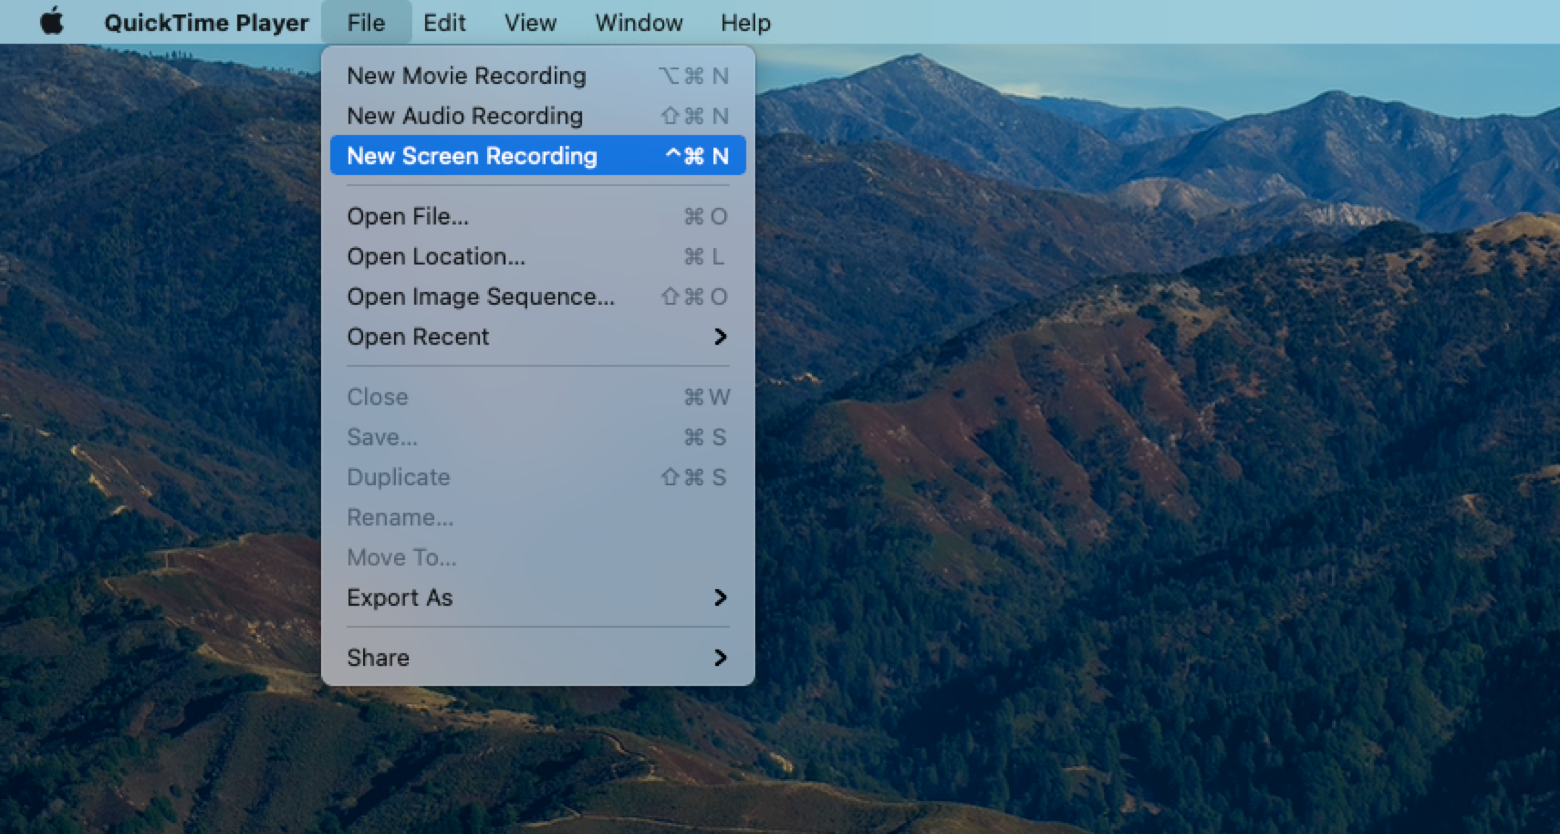 Screen record on Mac